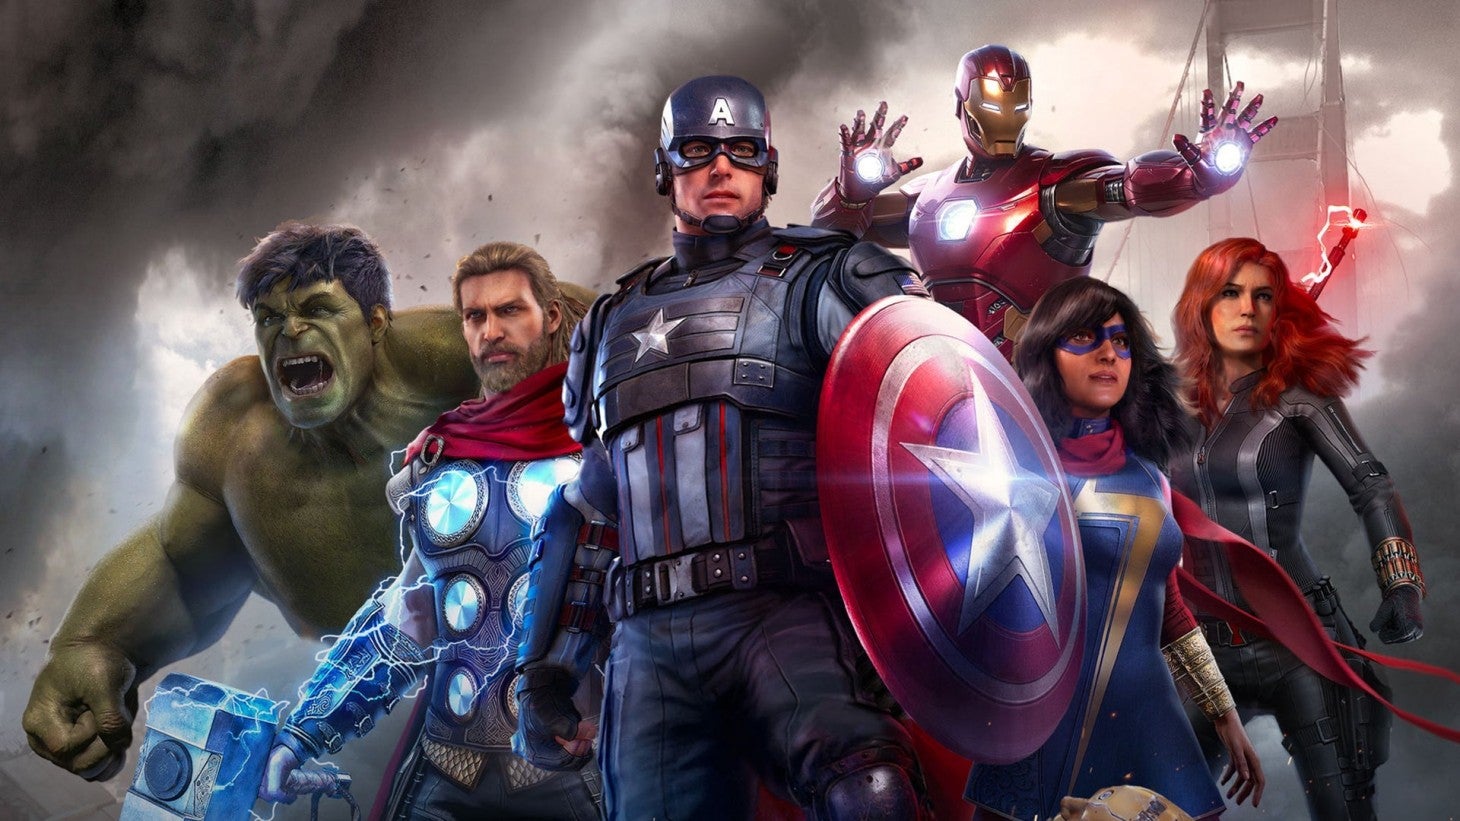 Image: Marvel’s Avengers